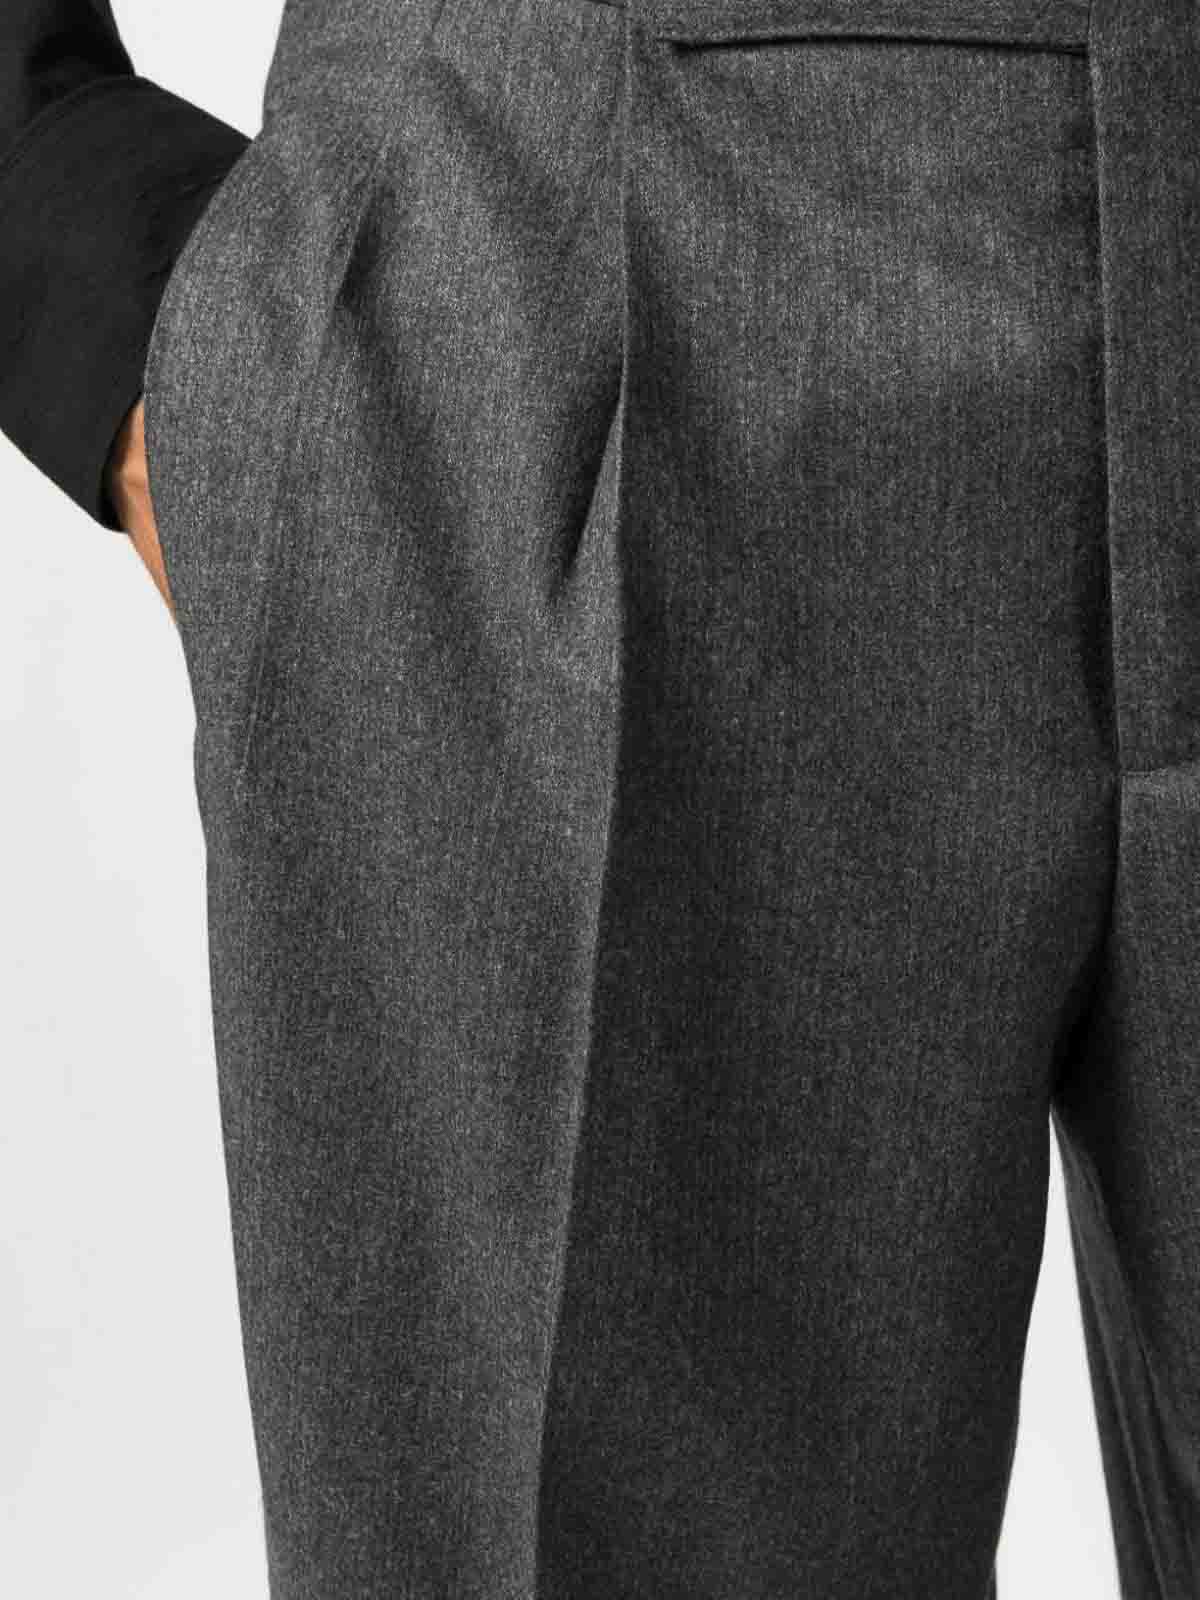 Emporio Armani Woven Two-piece Wool-silk Suit, Light Gray | ModeSens |  Designer suits for men, Men's suits, Suits